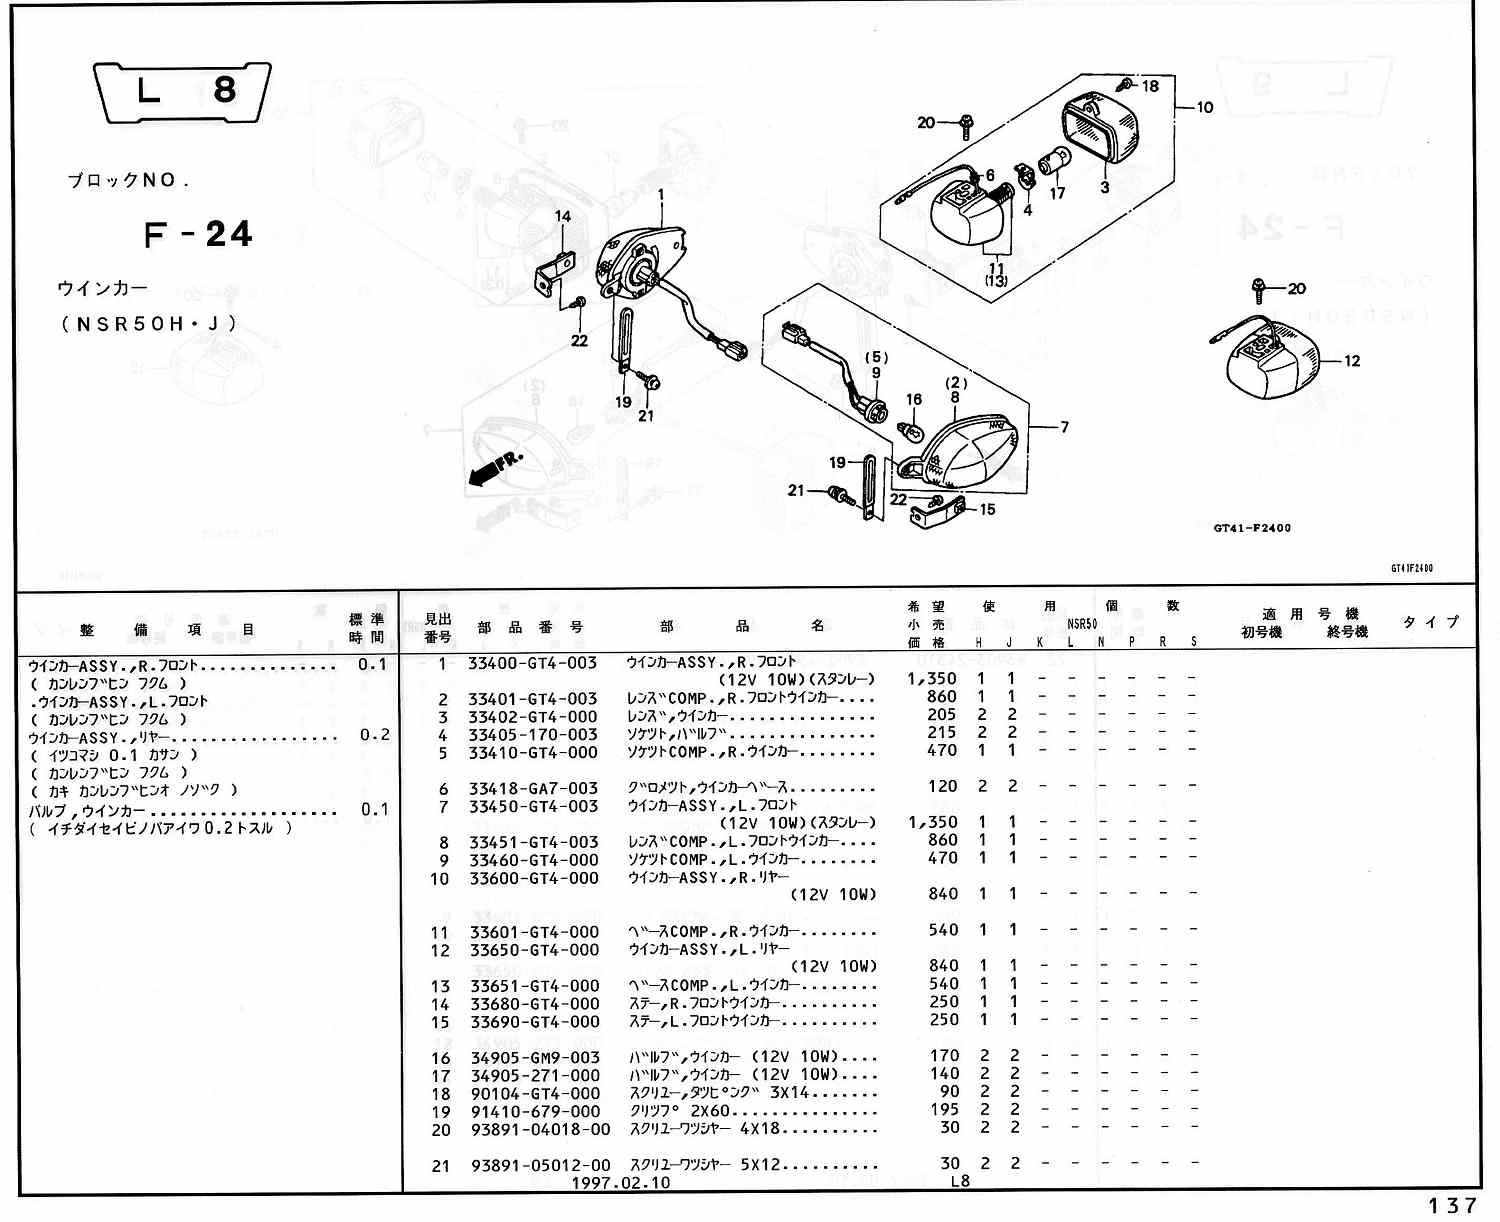 NSR50 ホンダ純正部品 ブロックNo,F-24 ウインカー ページ137、138 